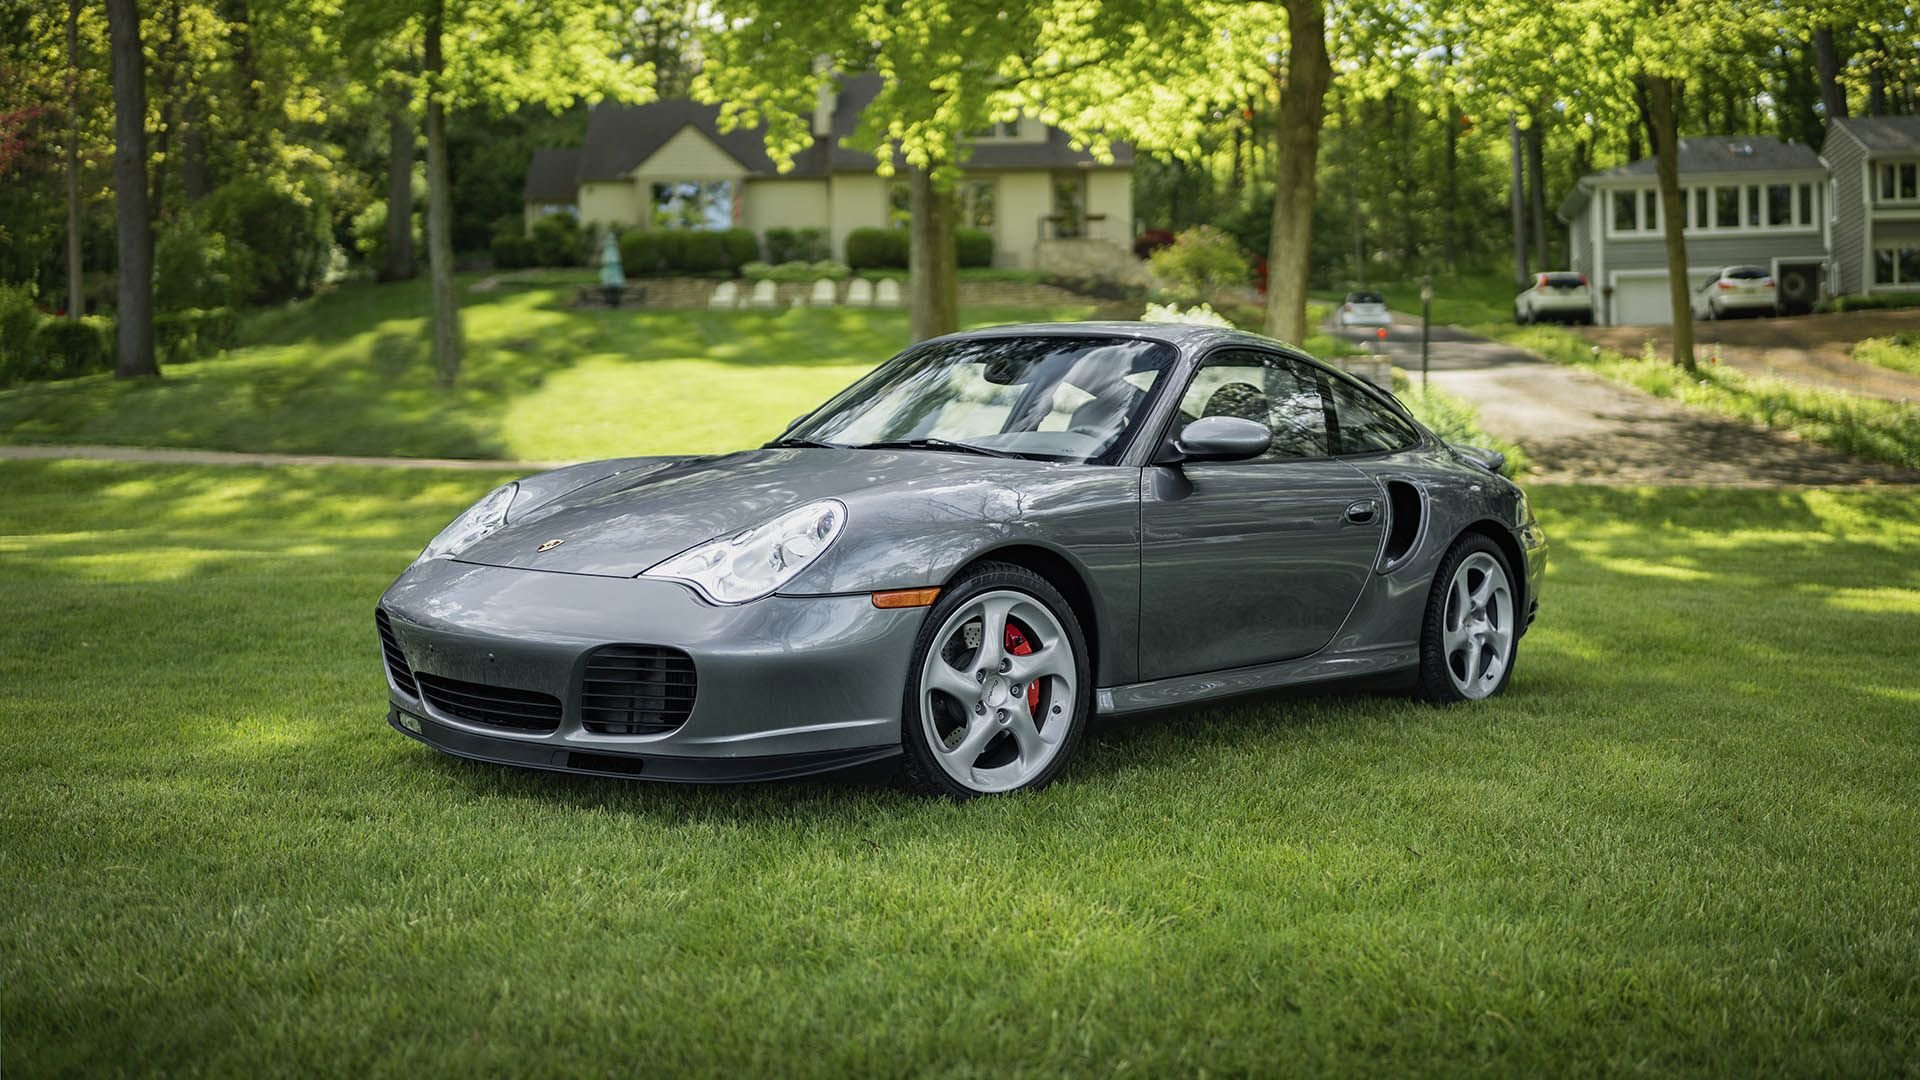 For Sale 2003 Porsche 911 Turbo